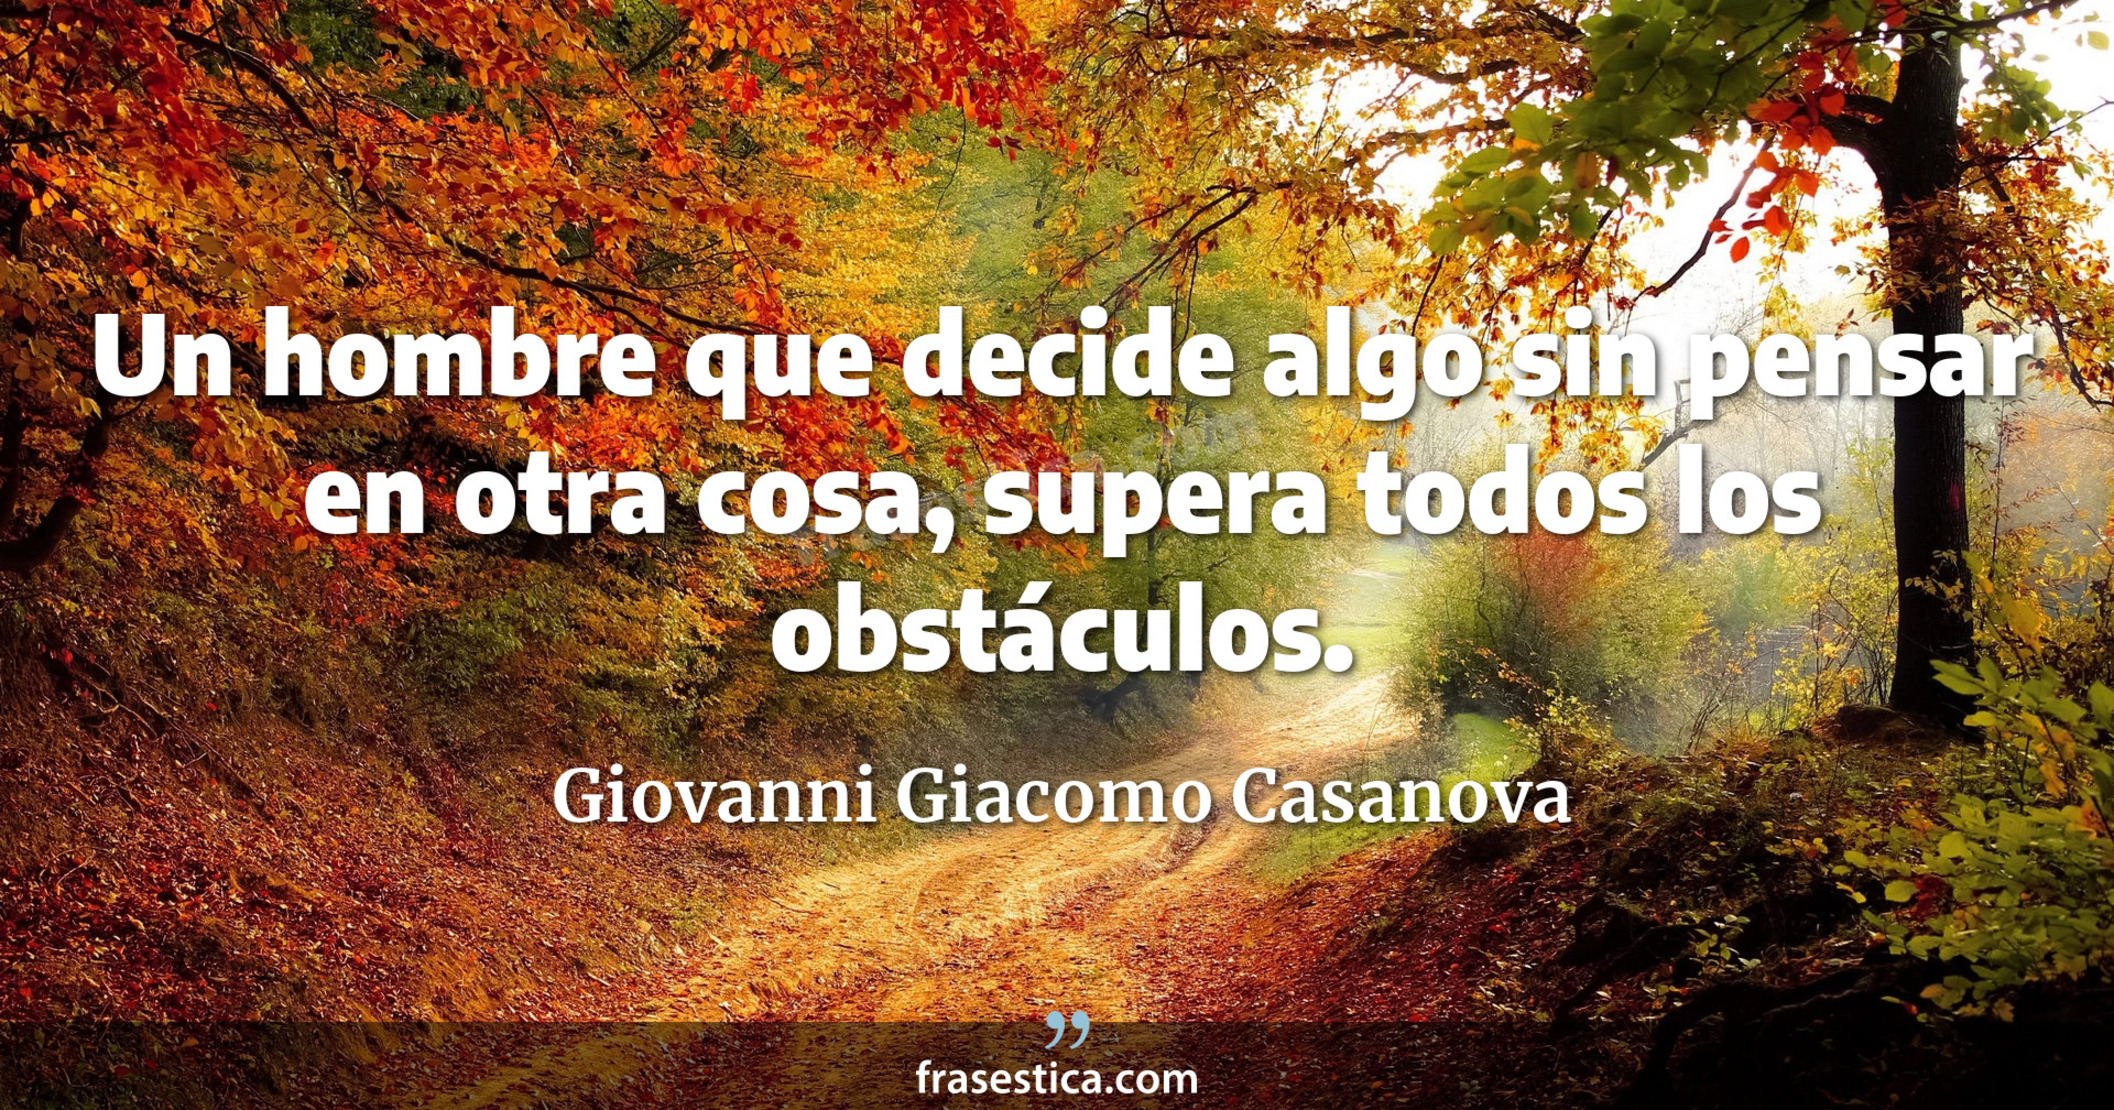 Un hombre que decide algo sin pensar en otra cosa, supera todos los obstáculos. - Giovanni Giacomo Casanova